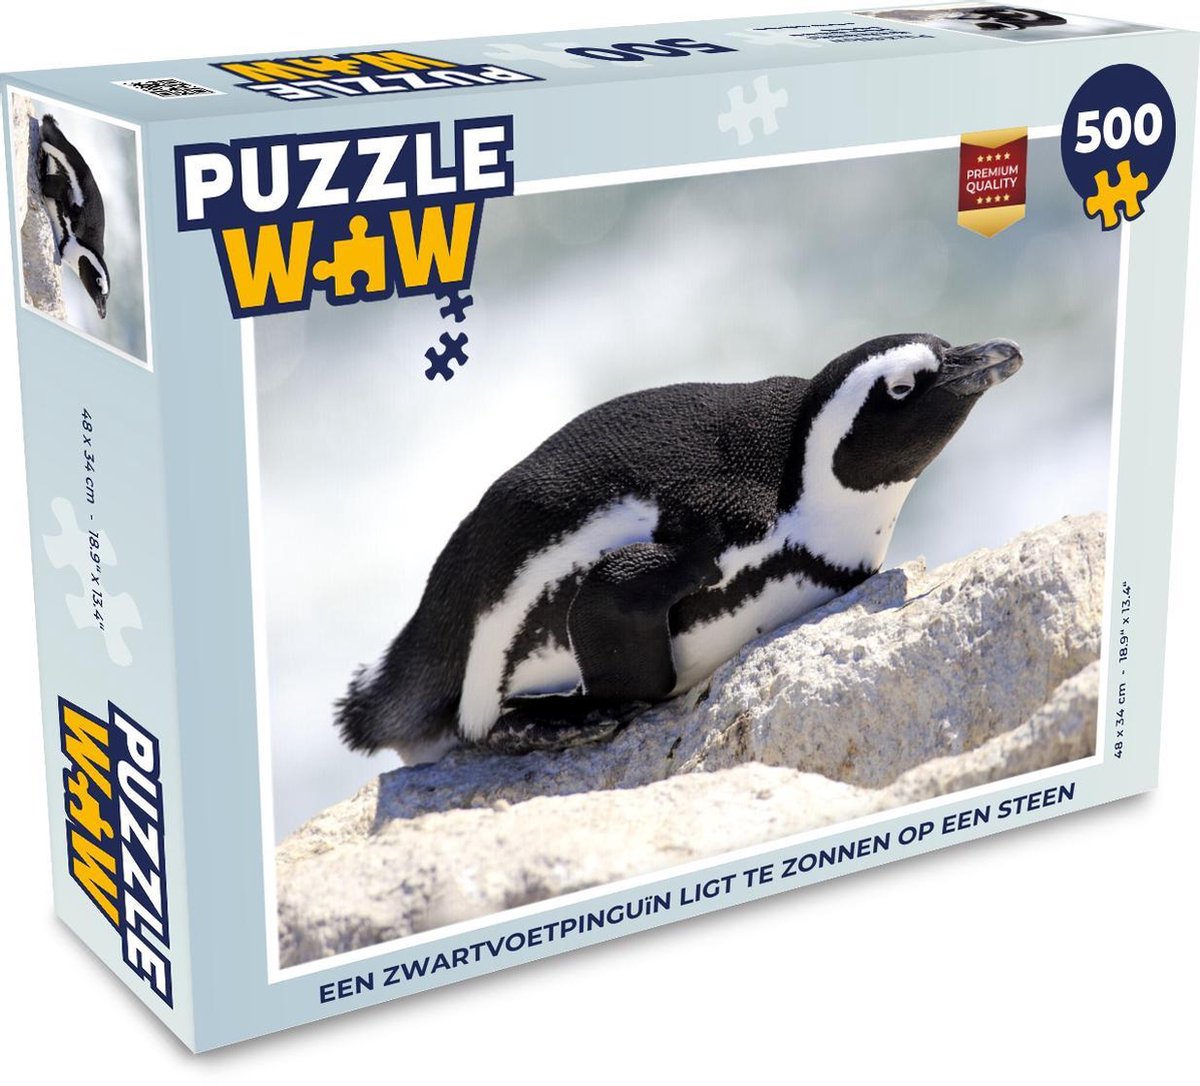 Afbeelding van product Puzzel 500 stukjes Zwartvoetpinguïn - Een Zwartvoetpinguïn ligt te zonnen op een steen - PuzzleWow heeft +100000 puzzels